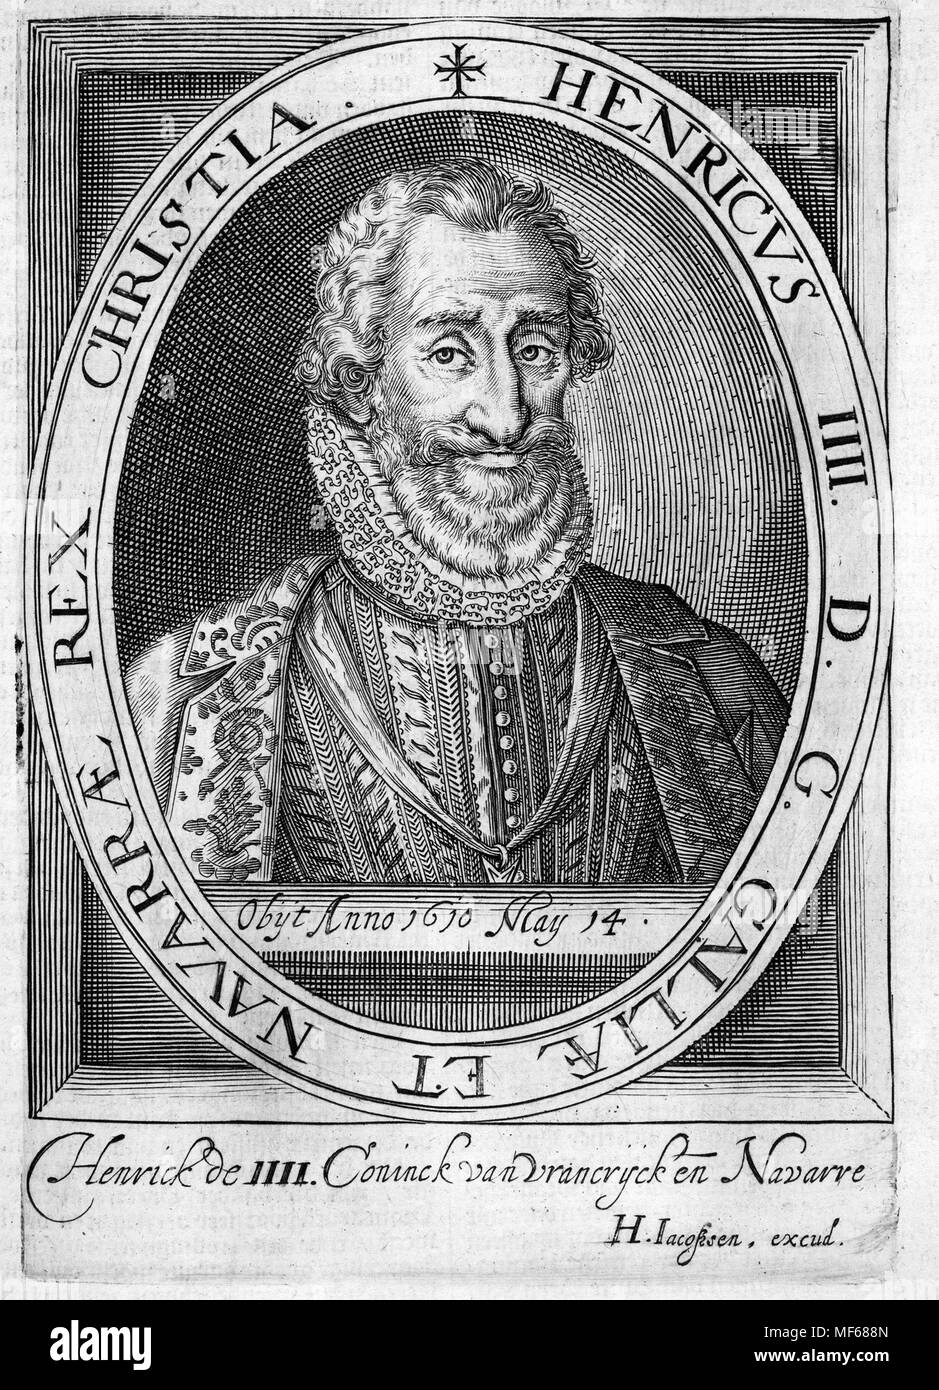 HENRY III DE FRANCE (1551-1589) lasy monarque français de la maison de Valois Banque D'Images